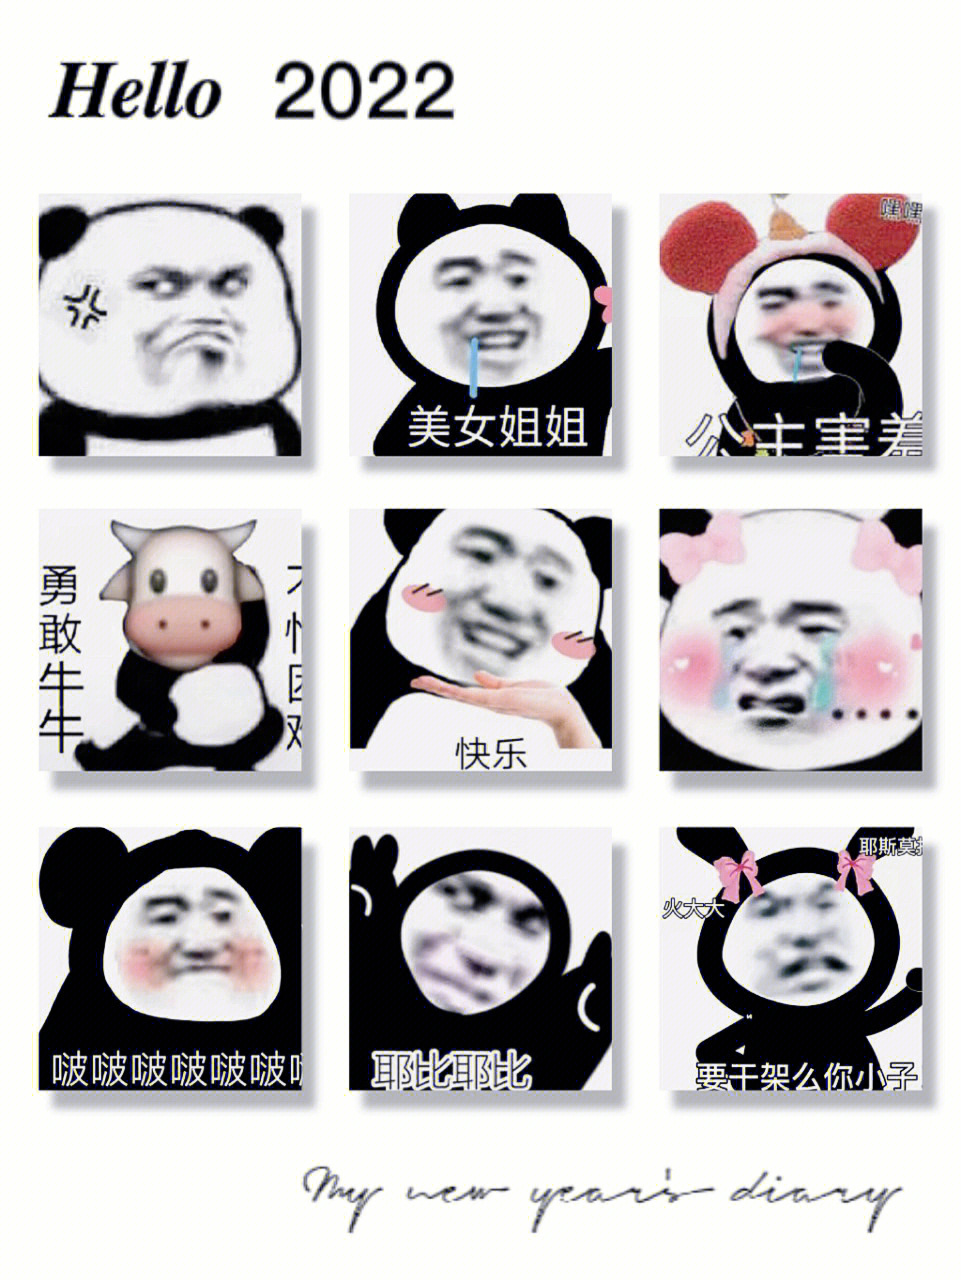 超实用的熊猫表情包